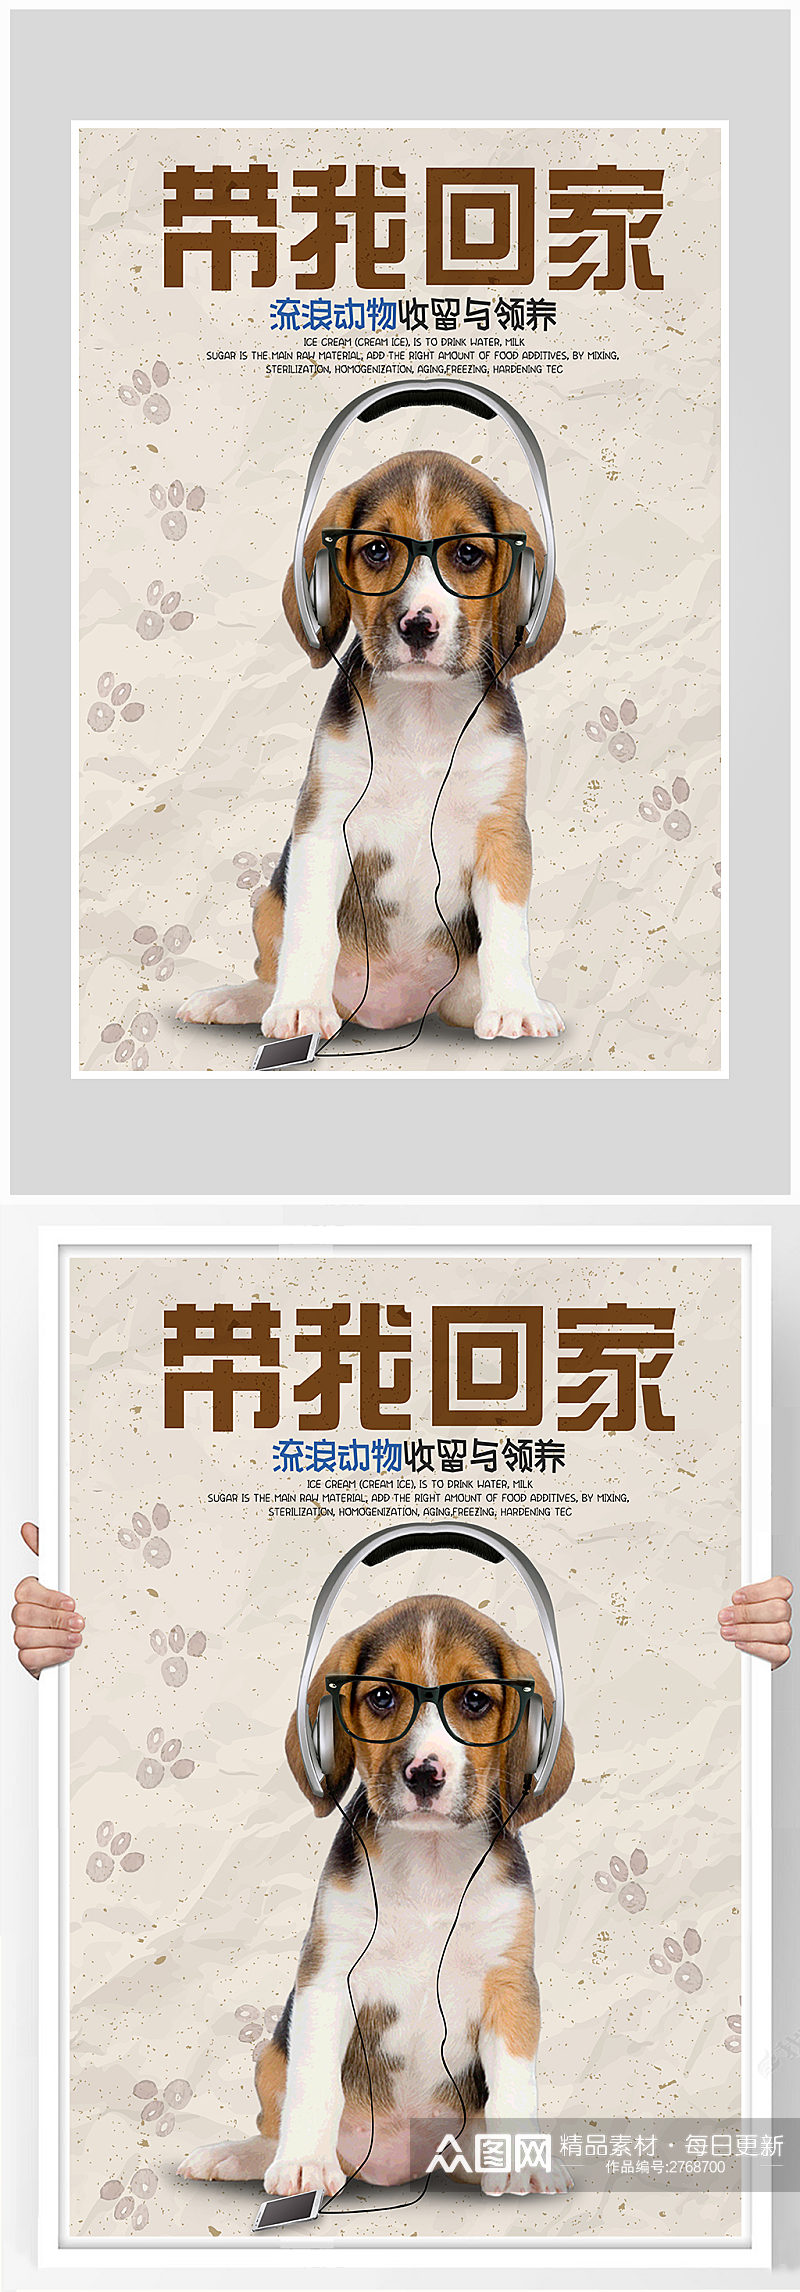 创意宠物店宠物狗小狗海报设计素材